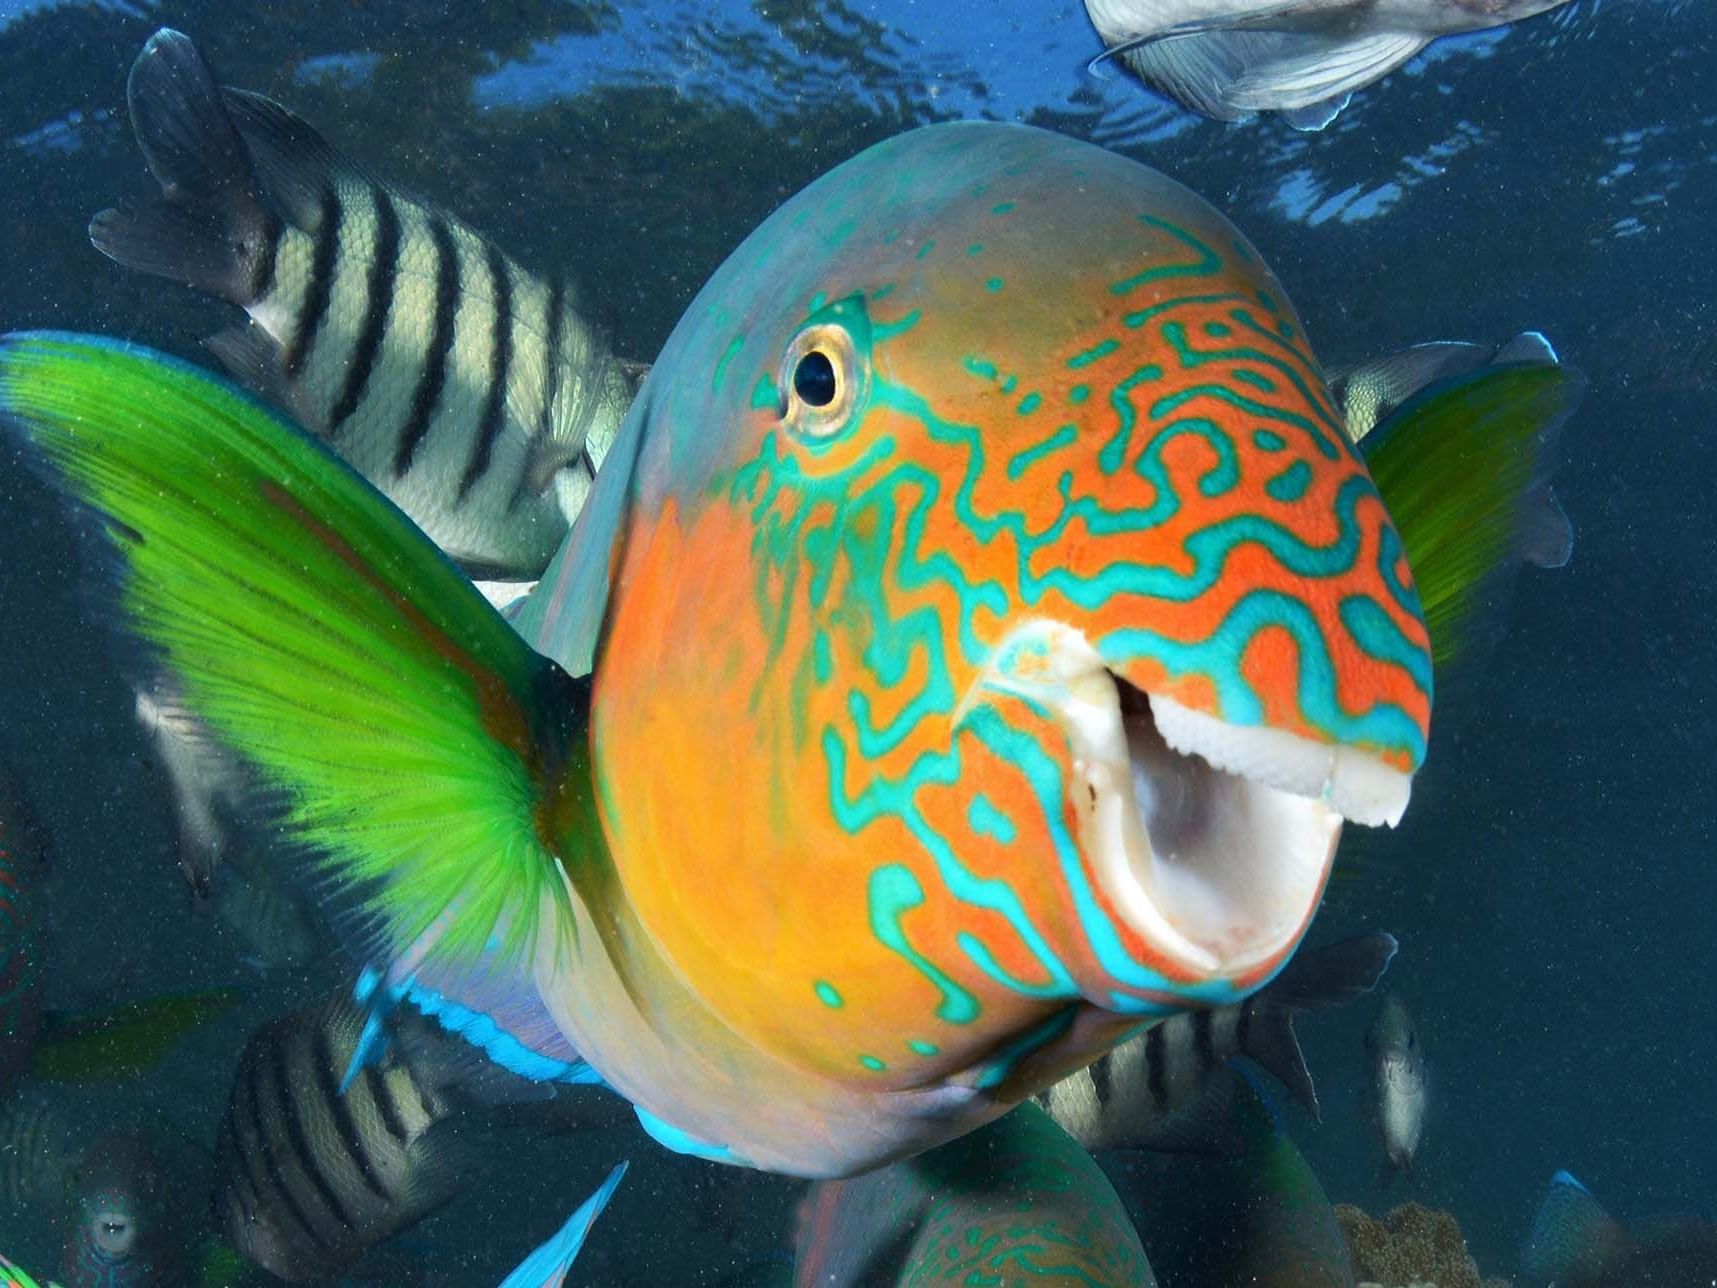 Closeup view of fish at Reef Aquarium in Daydream Island Resort